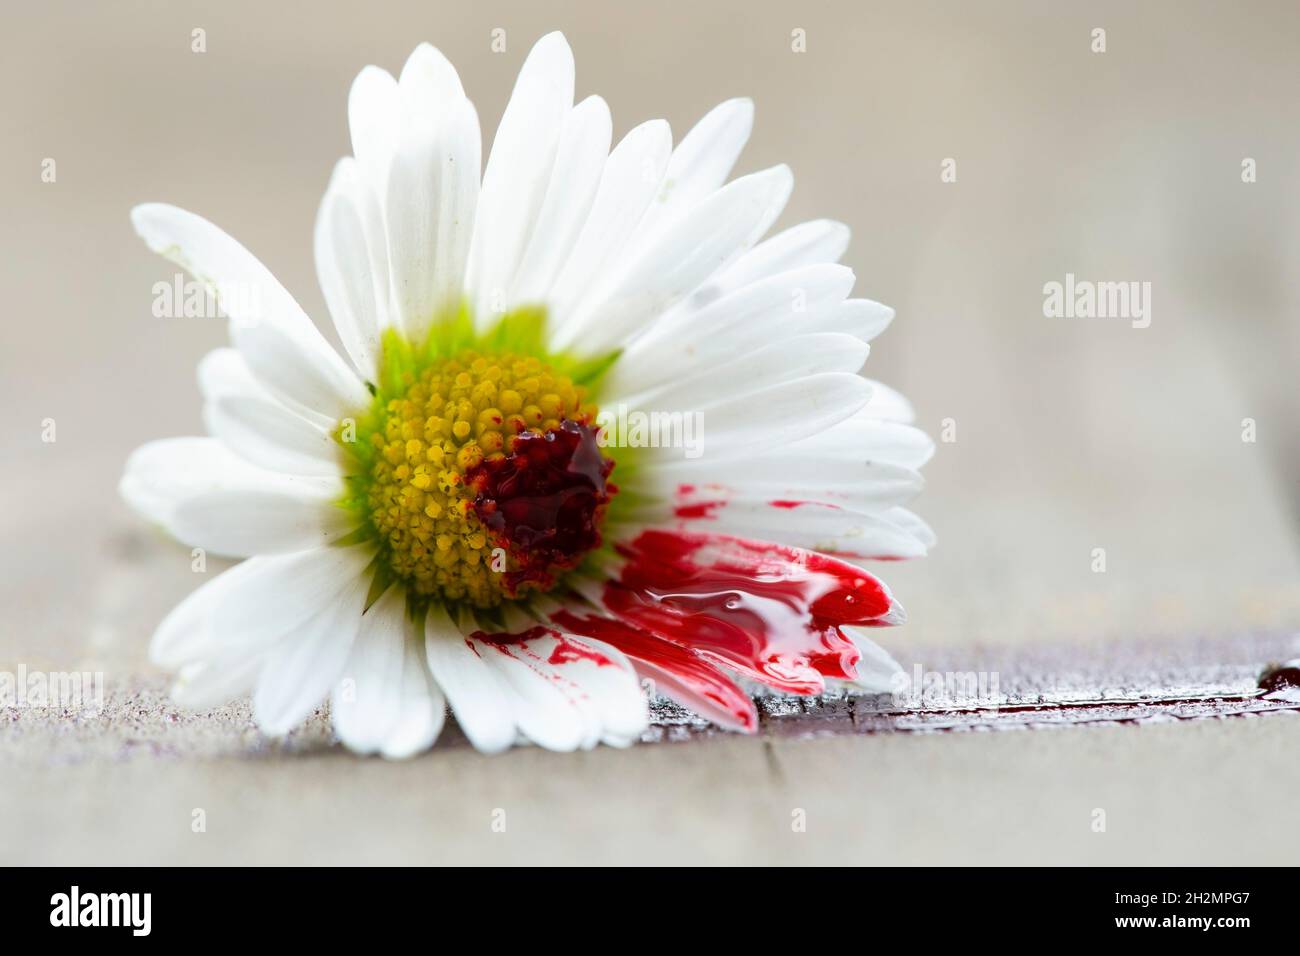 Weiße Gänseblümchen mit Blut auf den Blütenblättern. Konzept, das psychische Erkrankungen oder Umweltprobleme darstellt. Makro für selektiven Fokus Stockfoto